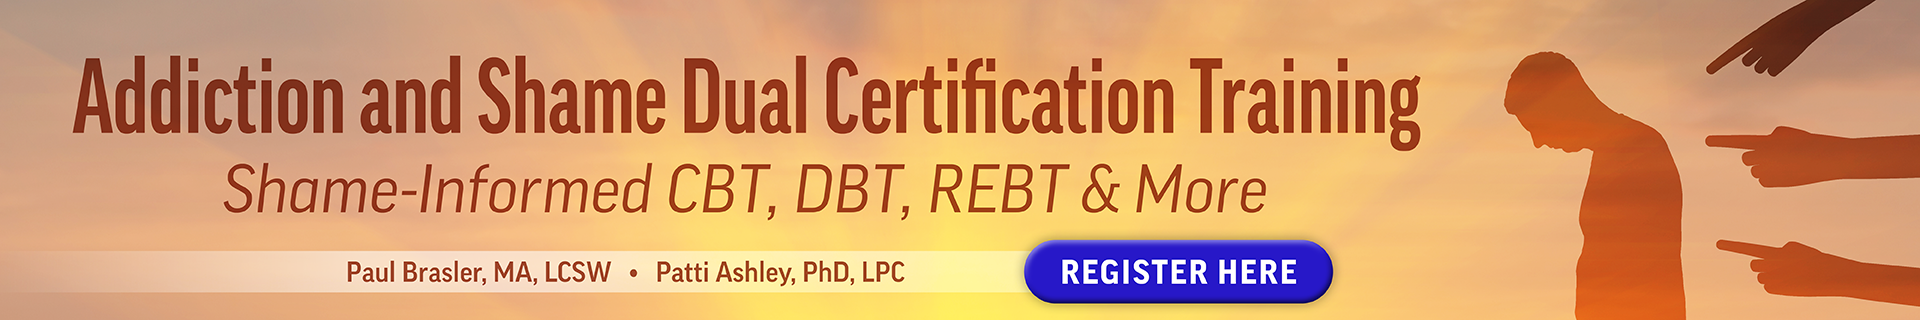 Addiction and Shame Dual Certification Training: Shame-Informed CBT, DBT, REBT & More